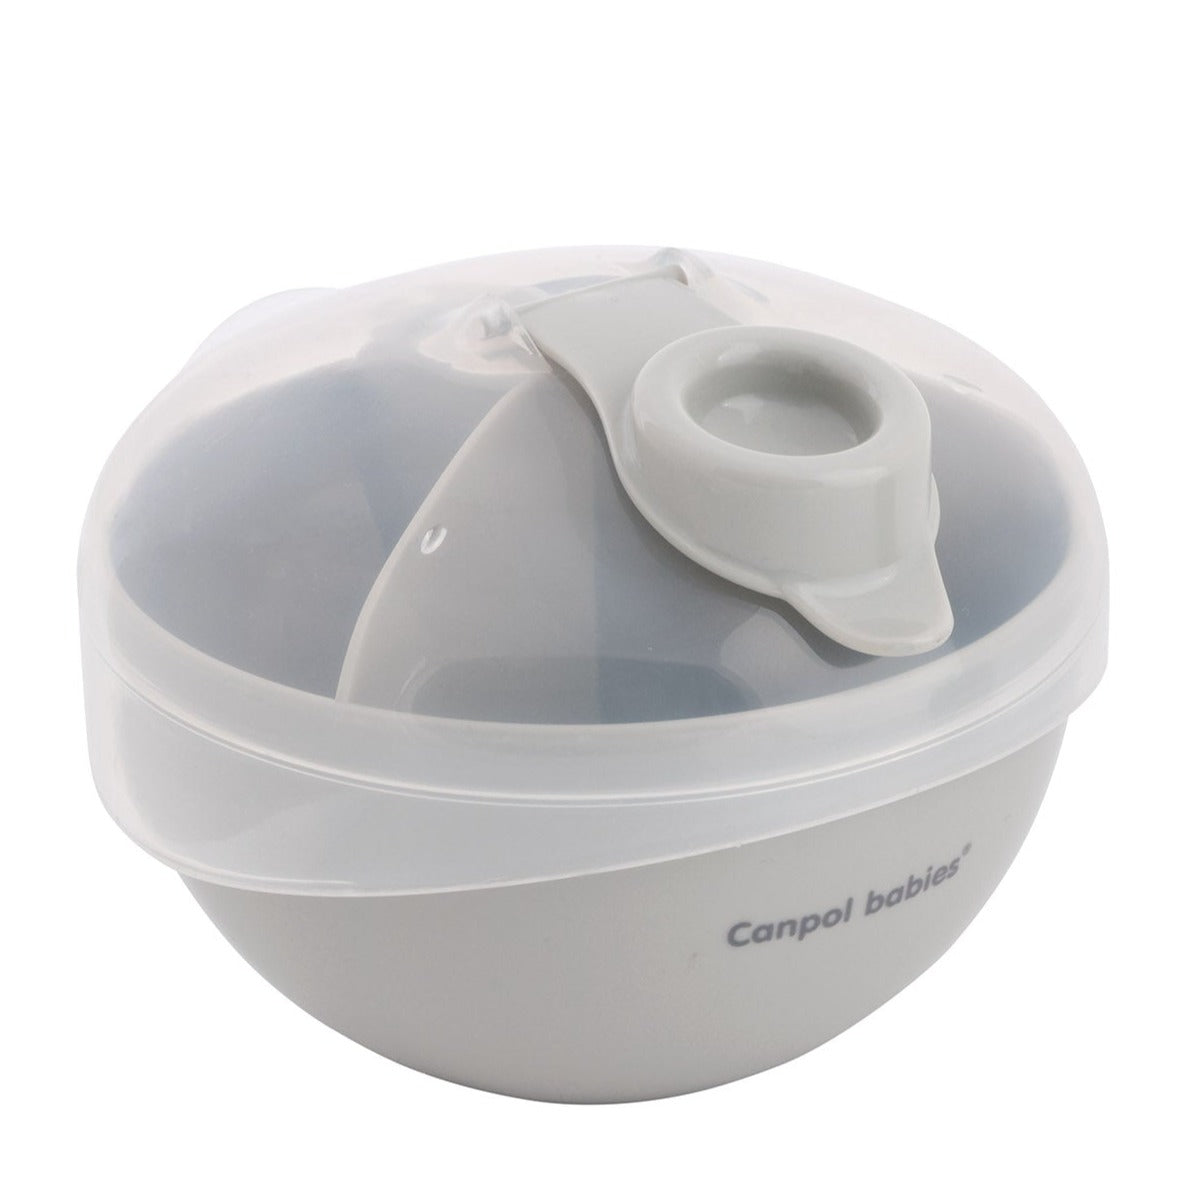 Canpol Babys: Graumilchpulverspender Pudermilchbehälter